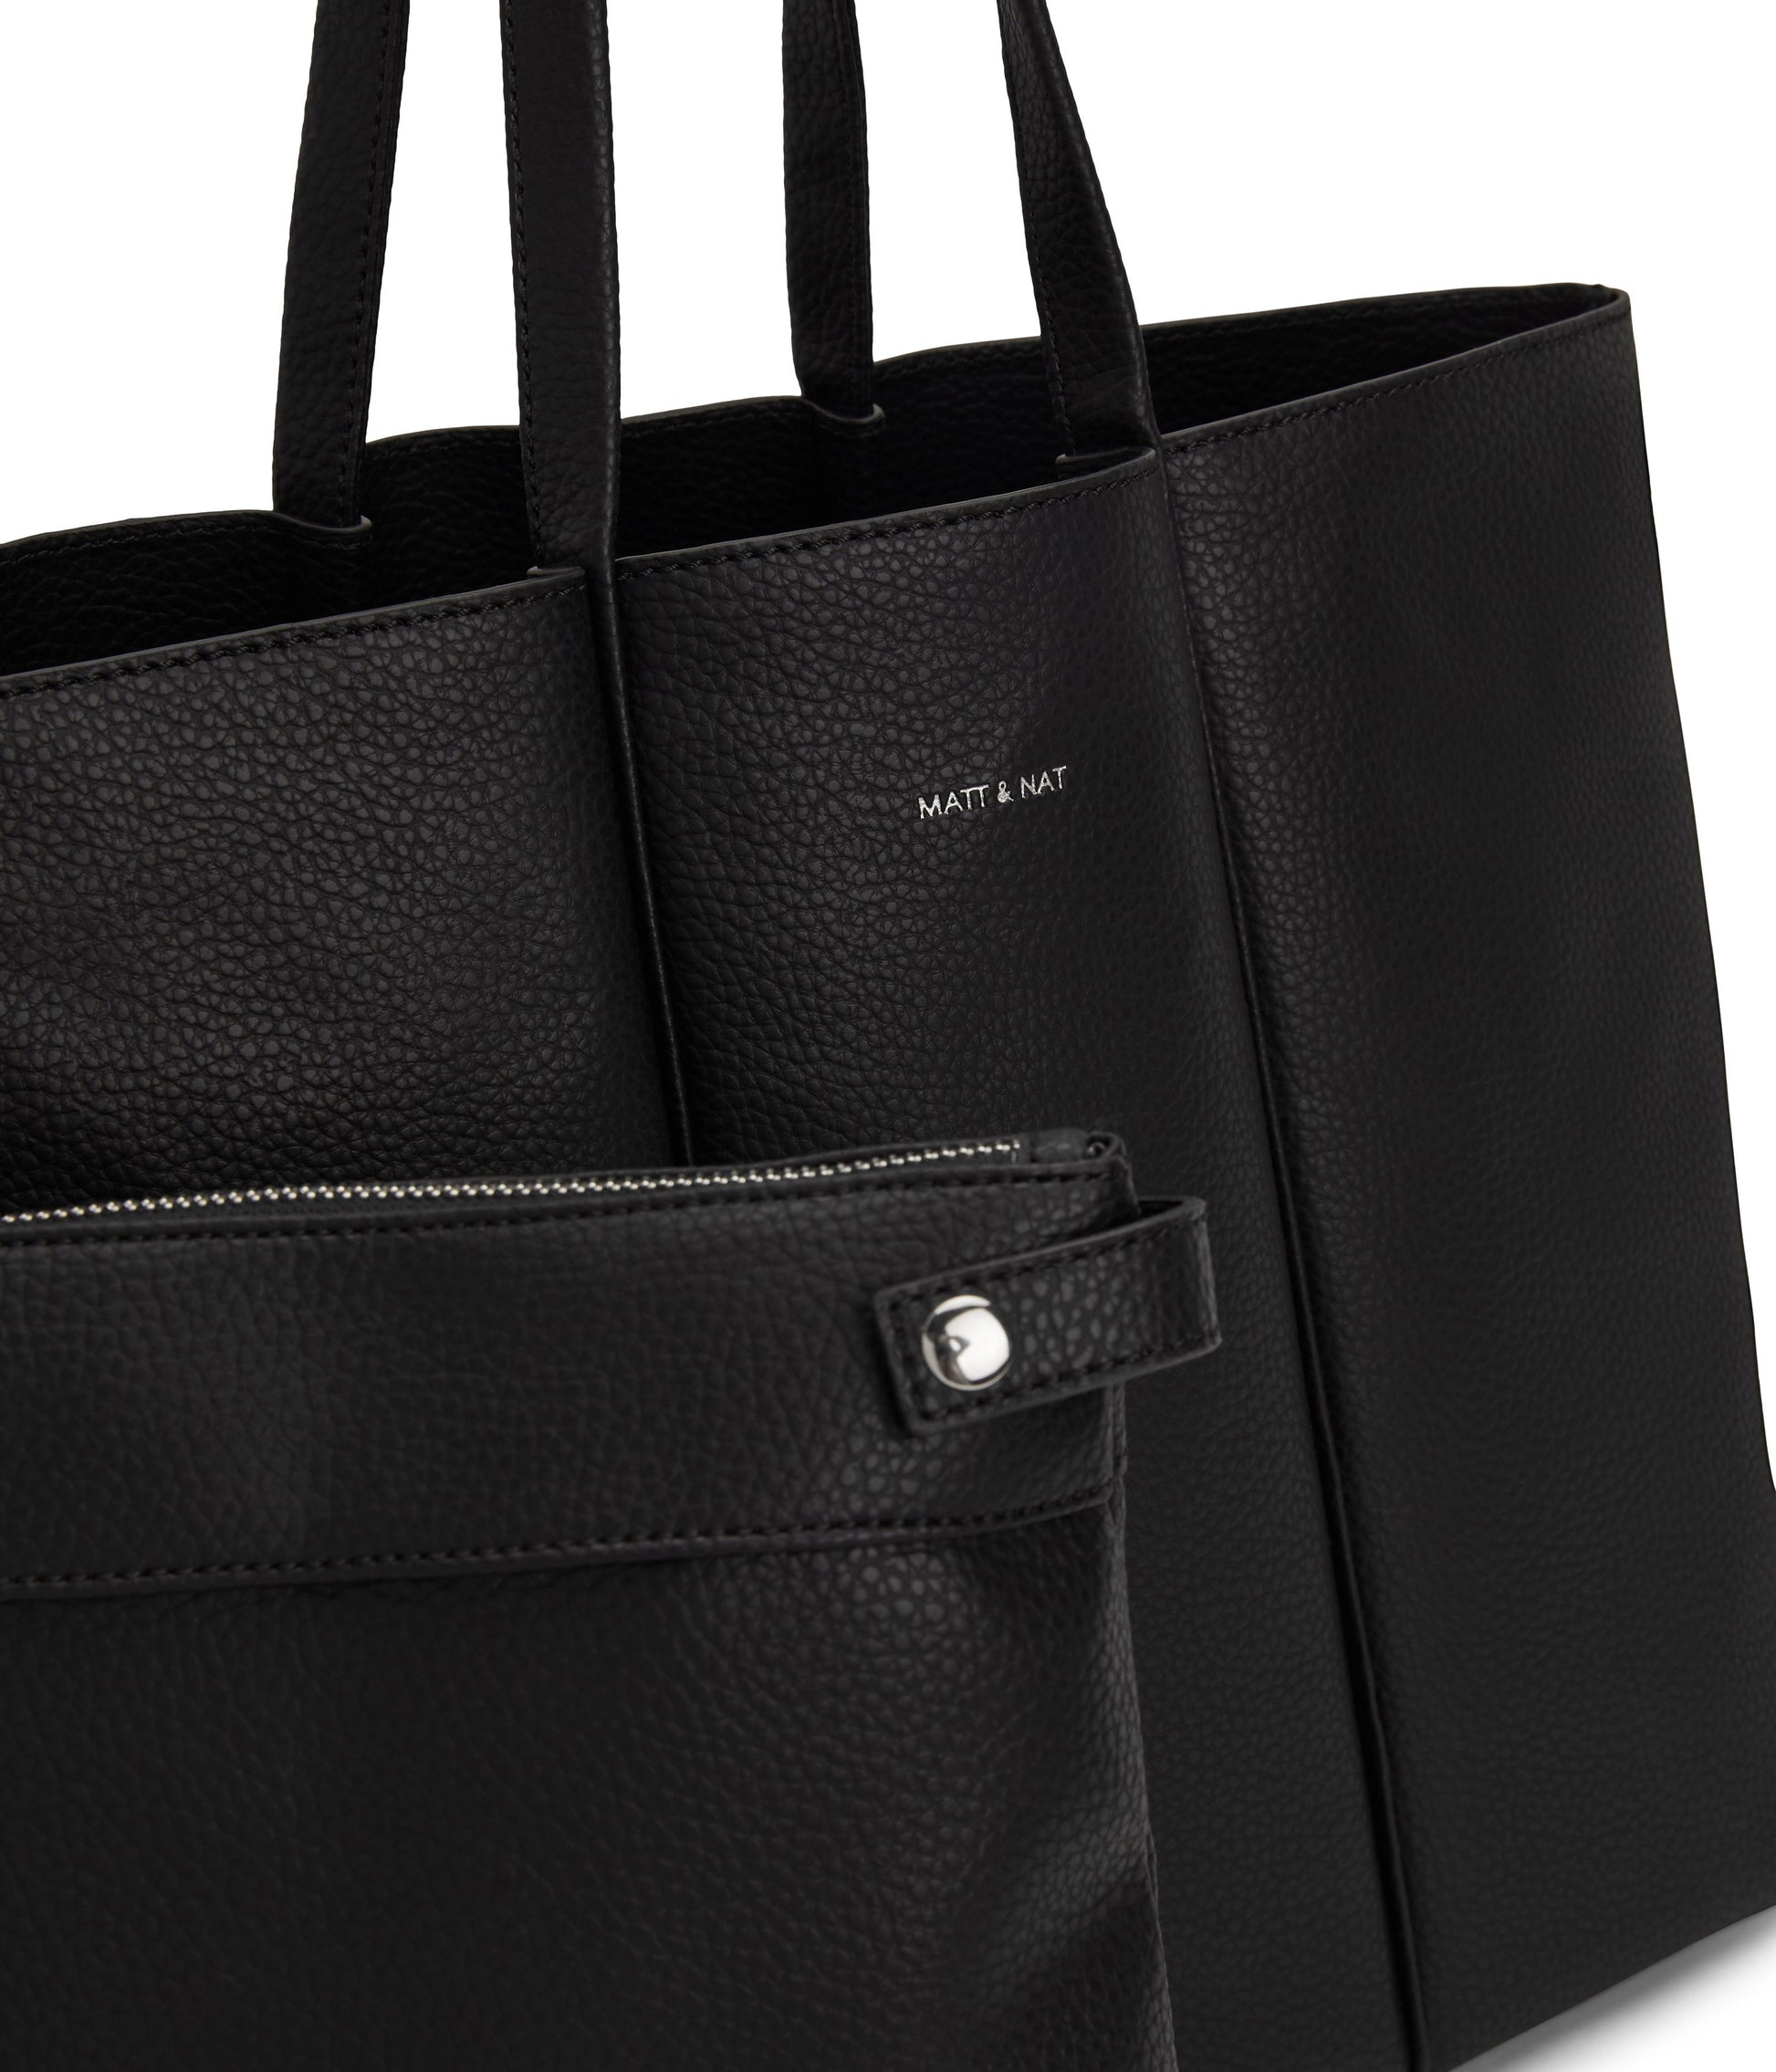 Mini Tote bag in Black Vegan leather, Vegan tote bag